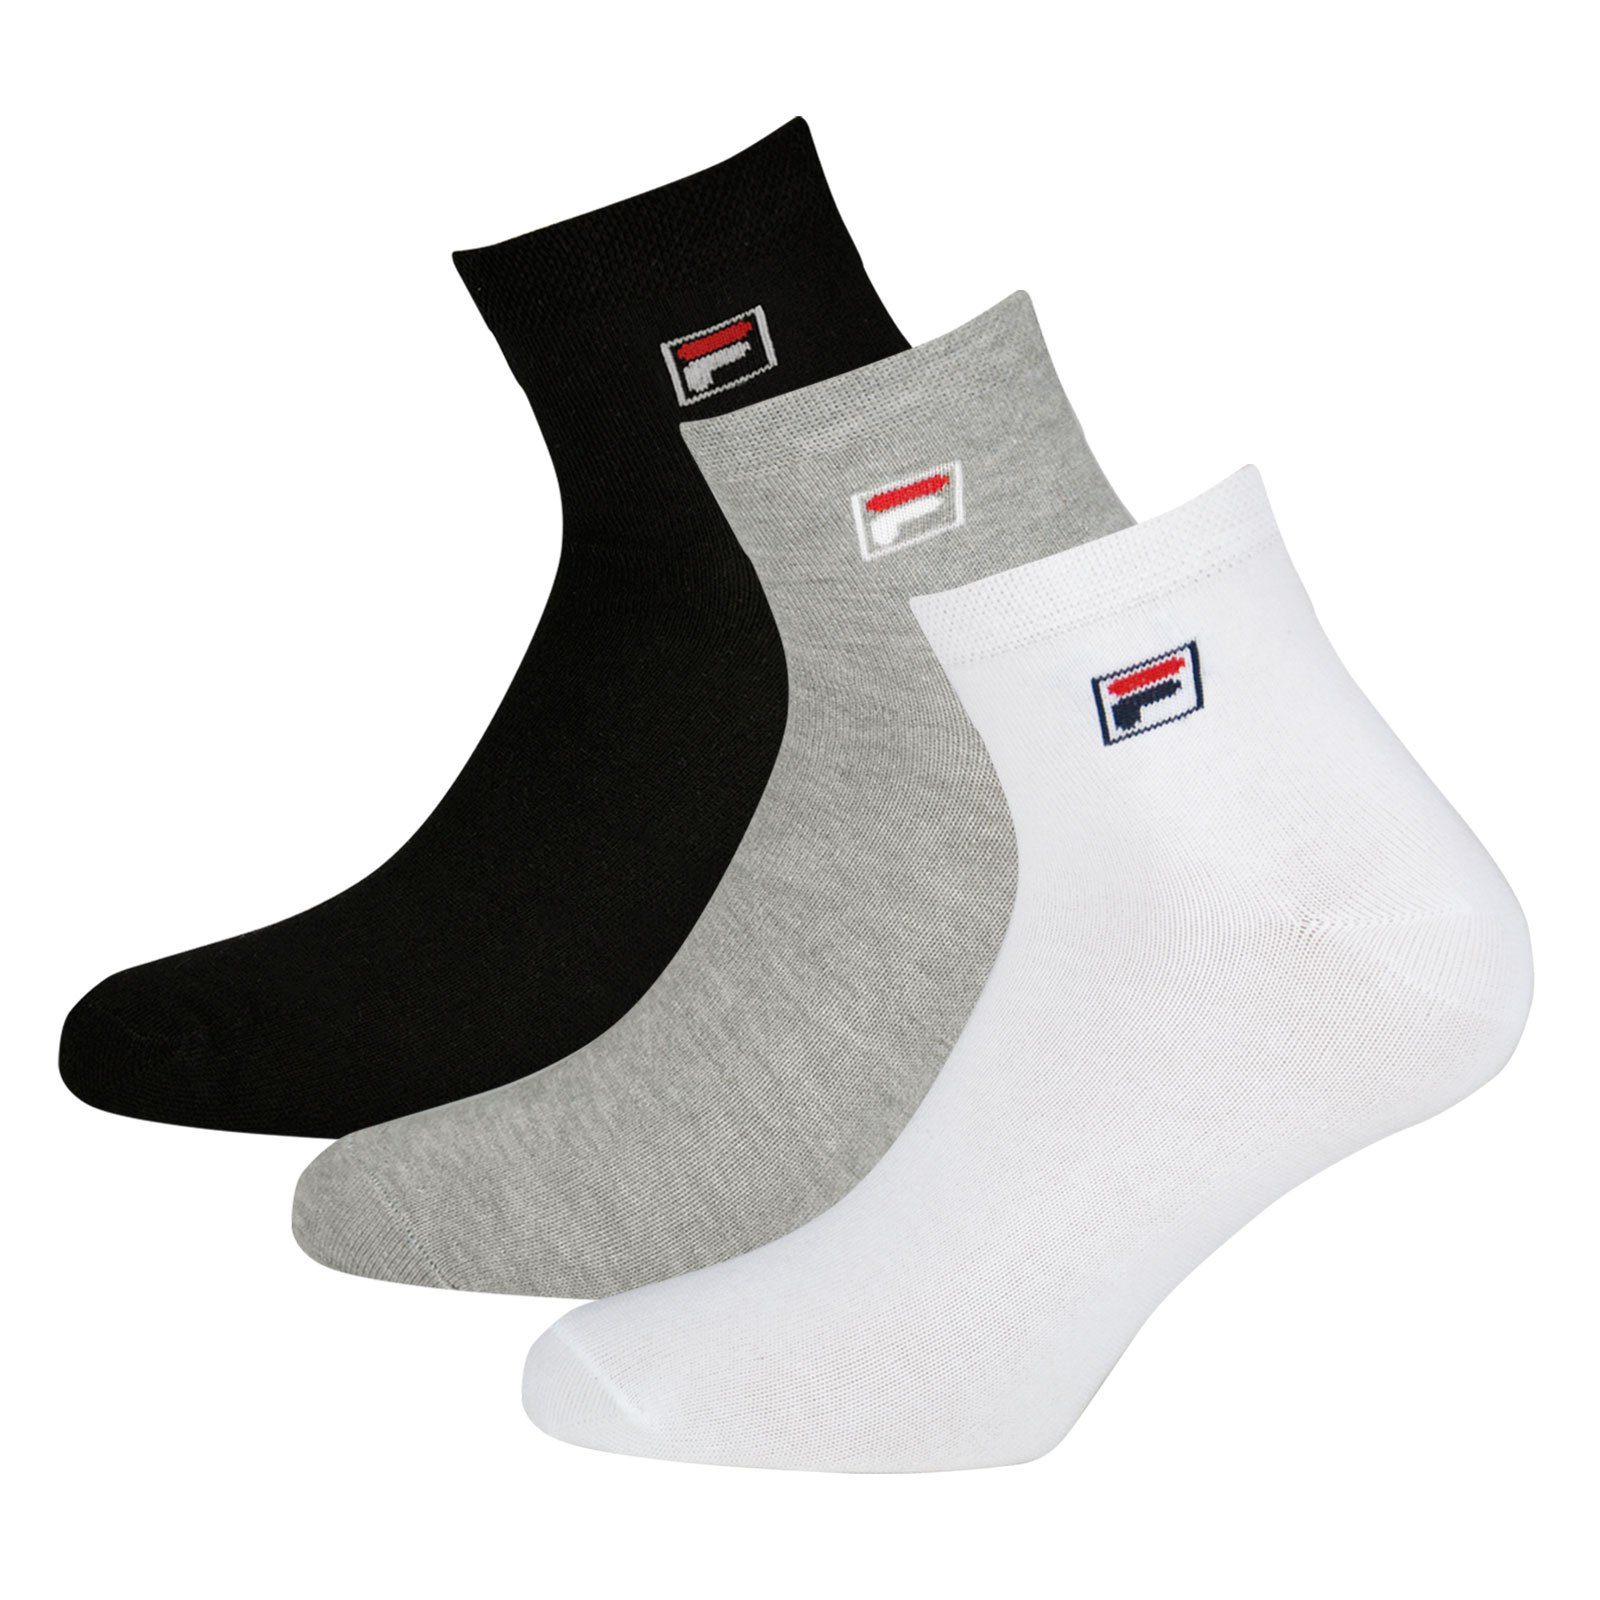 Piquebund Socken Fila mit (18-Paar) white Quarter / elastischem grey 700 Sportsocken / black